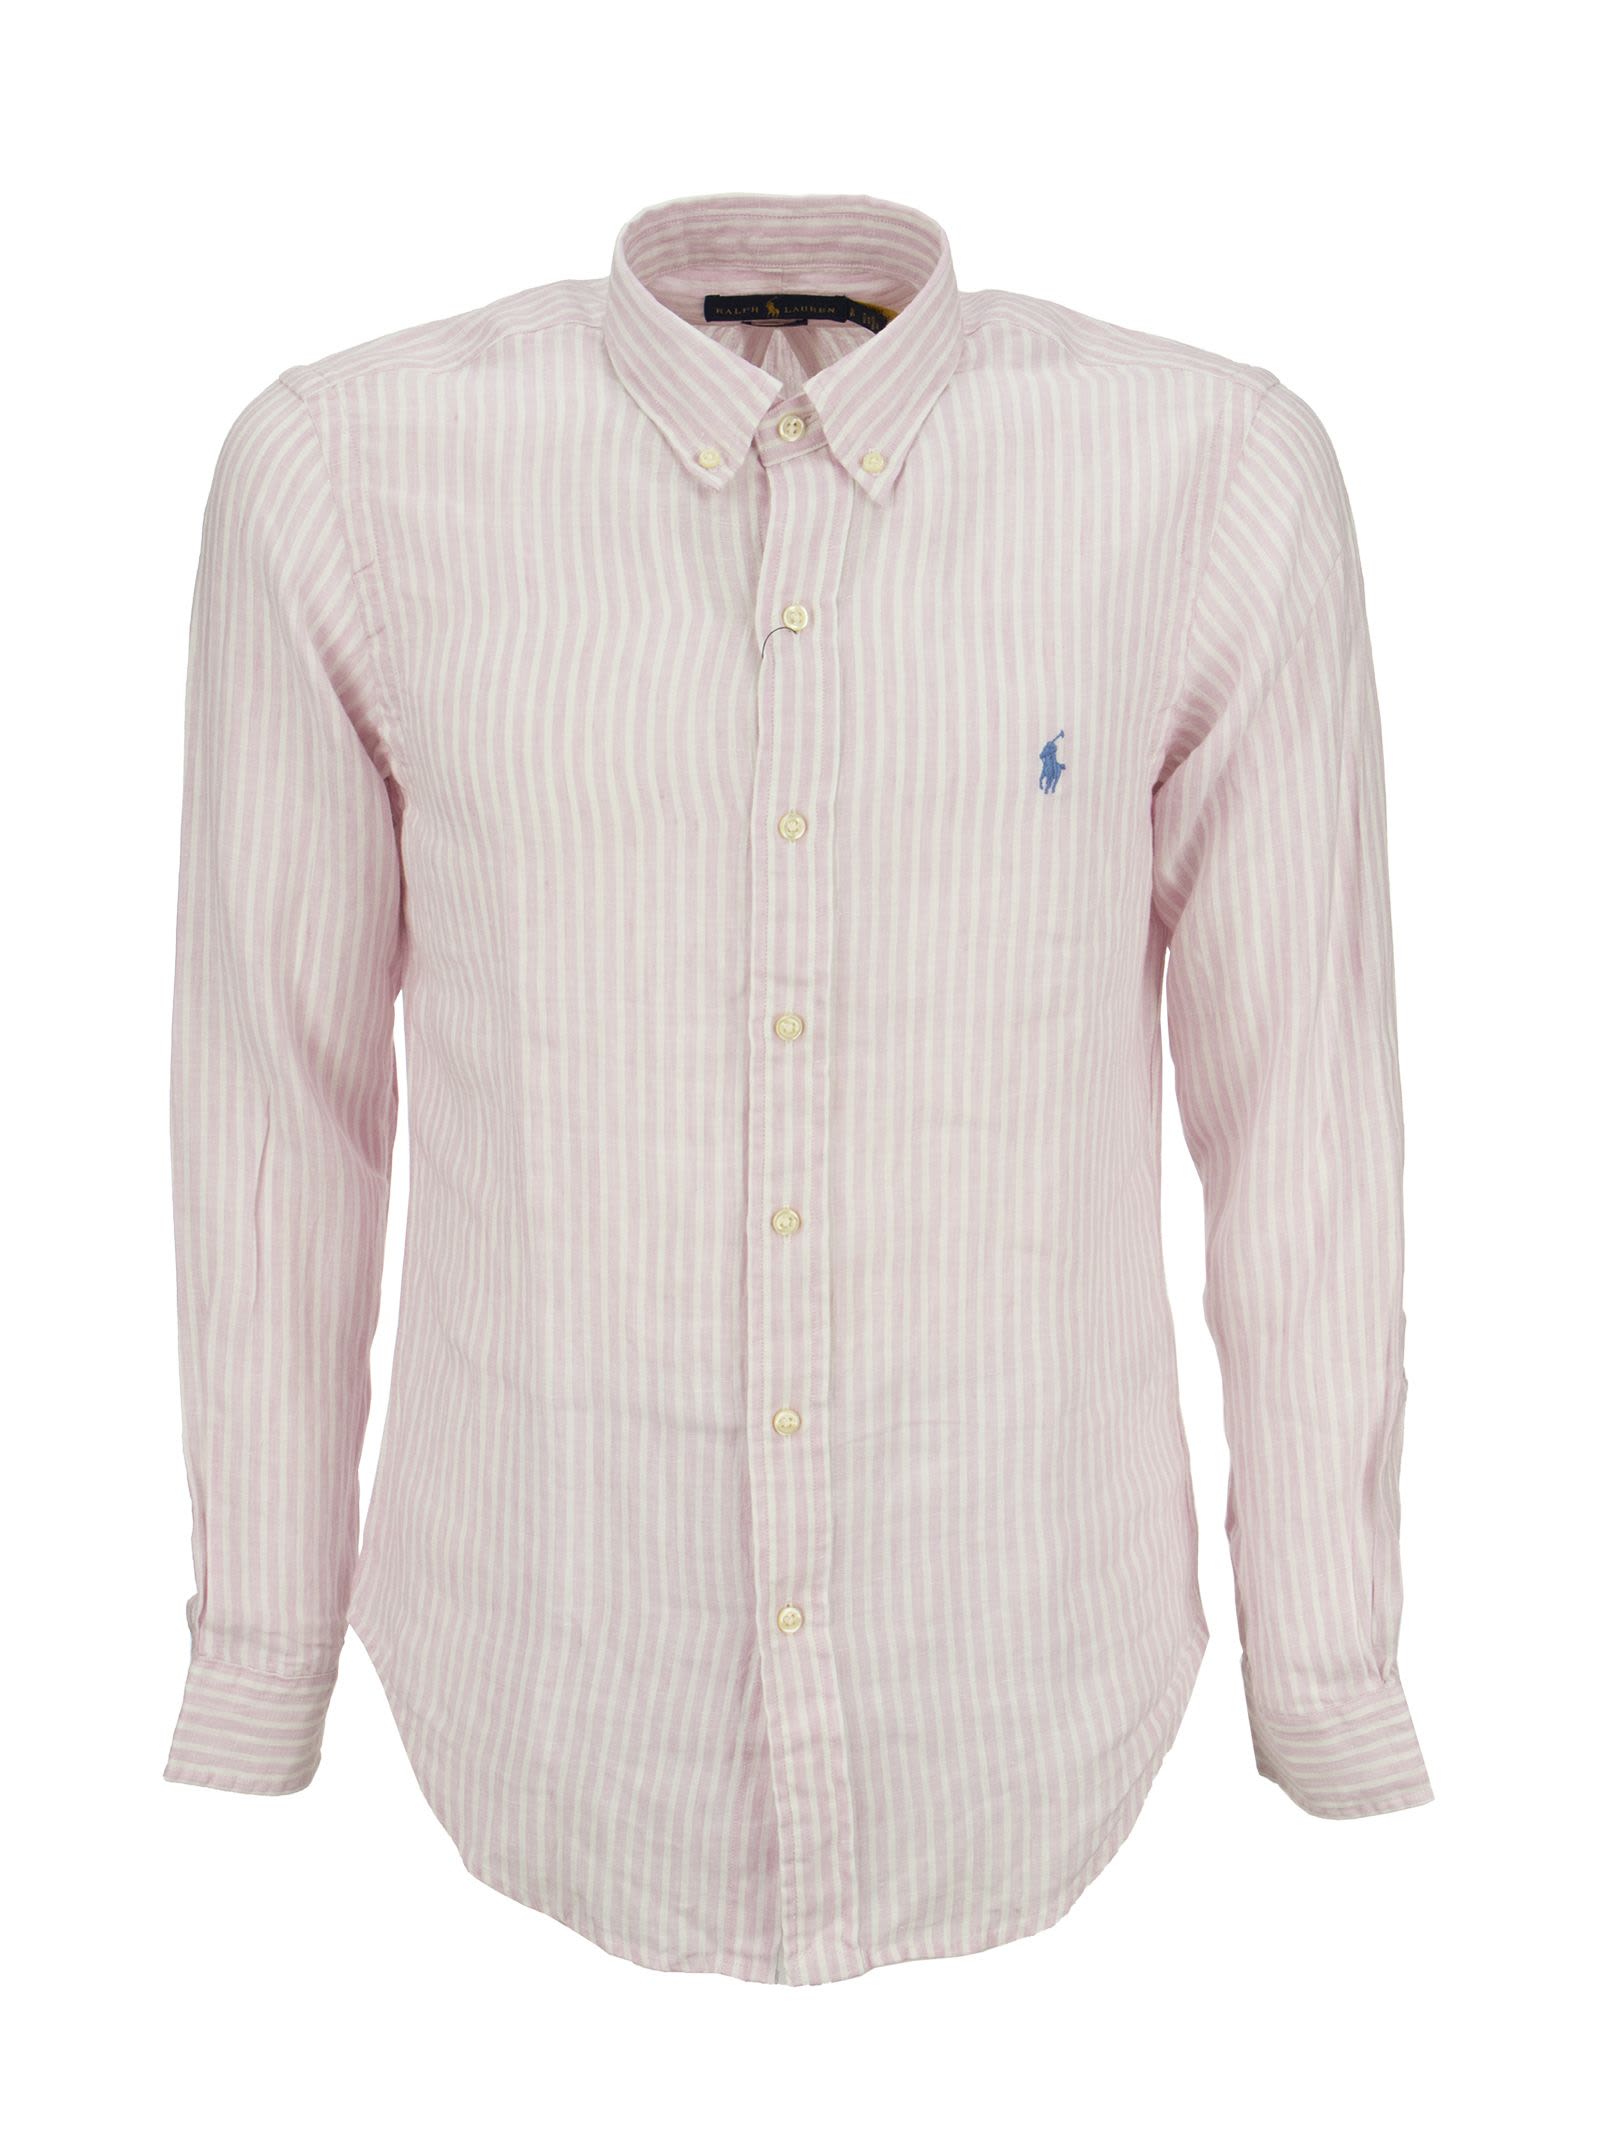 Ralph Lauren Custom Fit Striped Linen Shirt